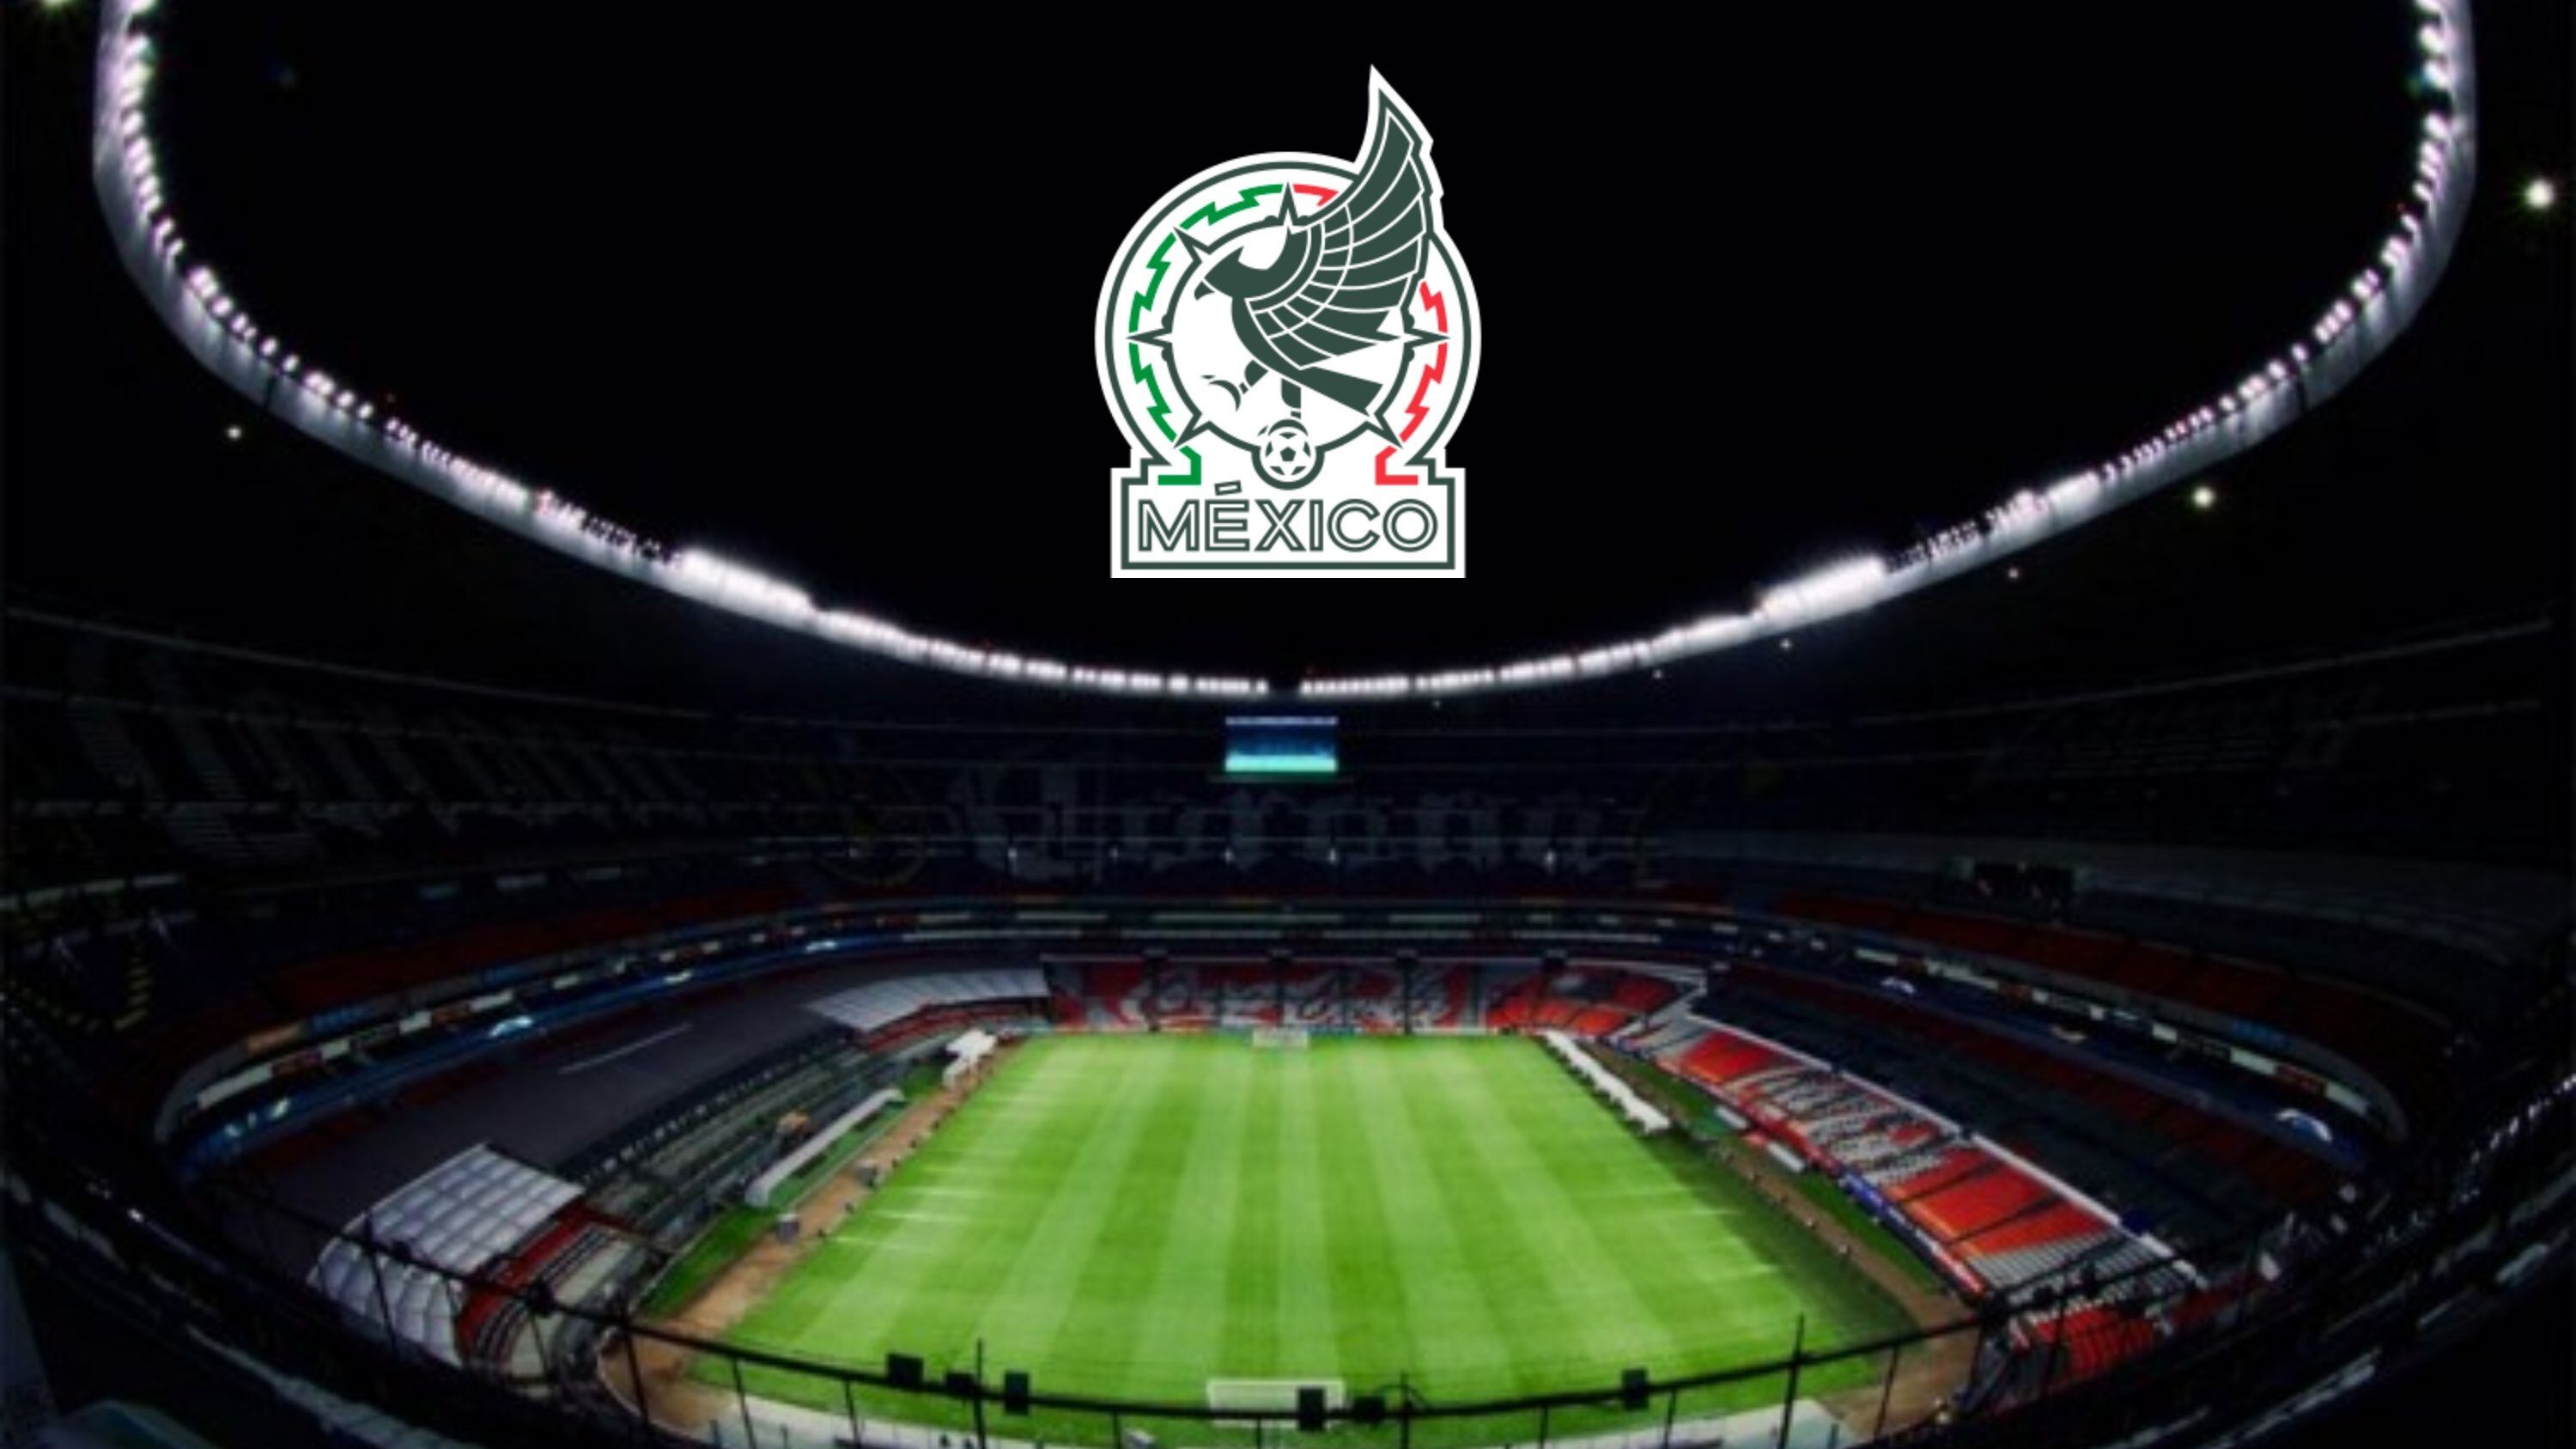 Which teams have defeated Mexico at Estadio Azteca?